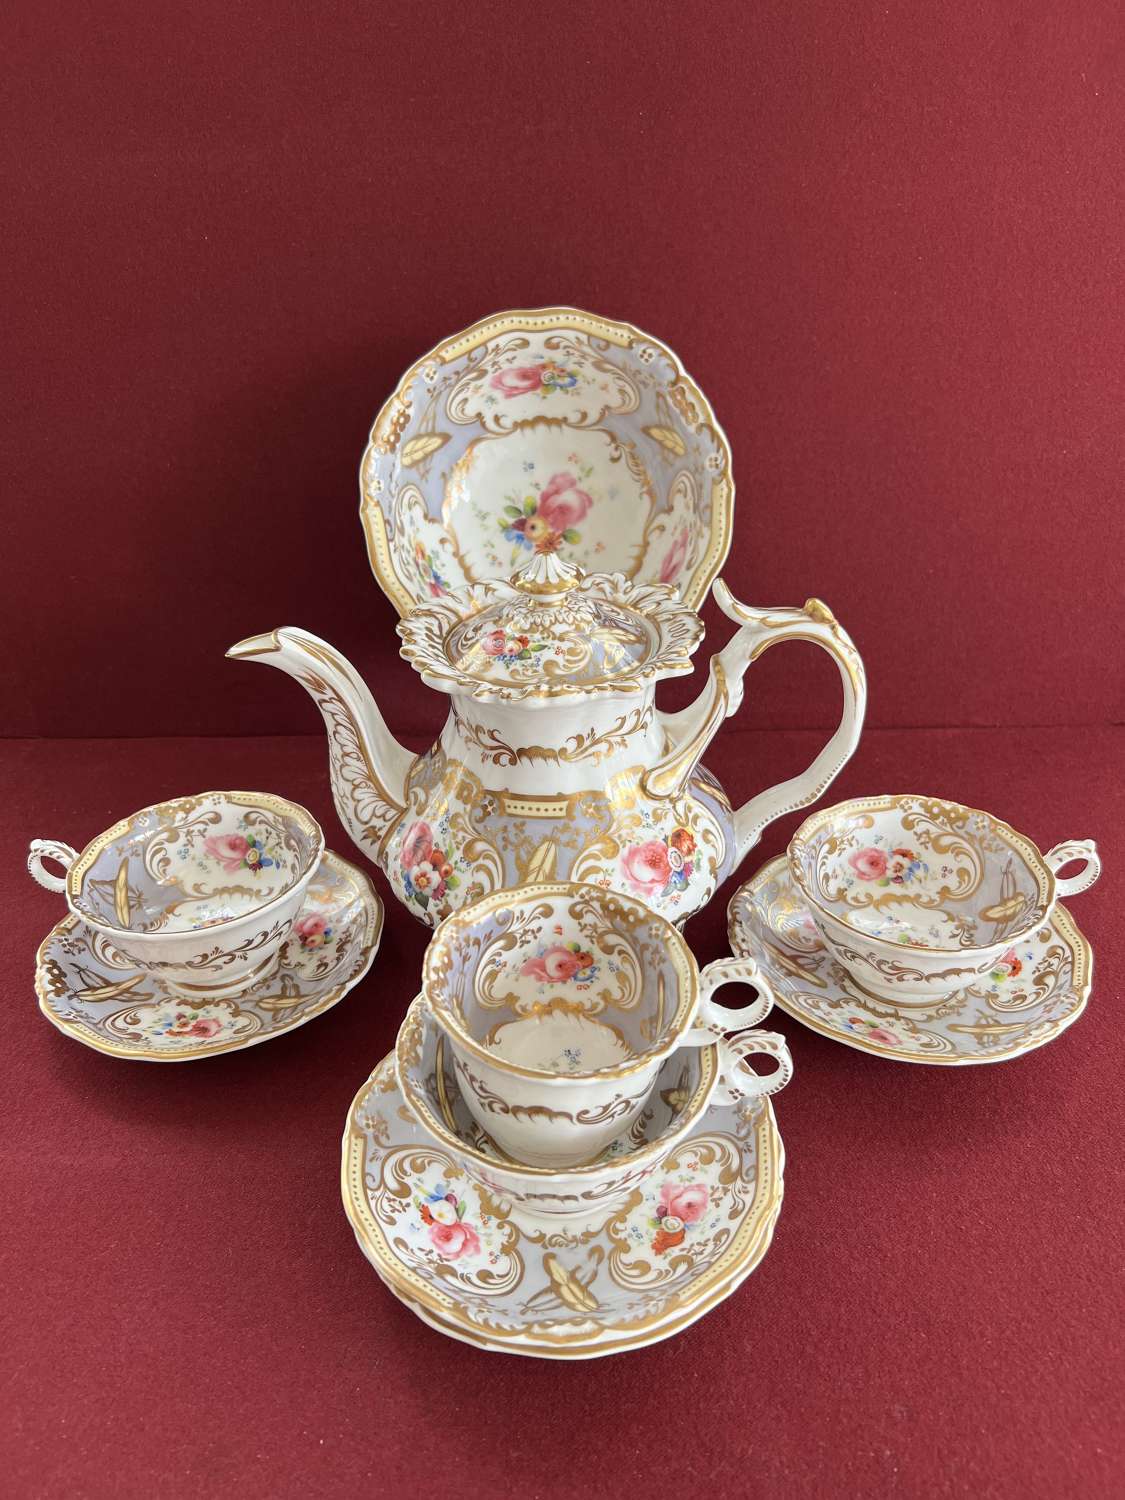 A Grainger's Worcester 'Gloster' Shape Part Tea Set c.1835-1840